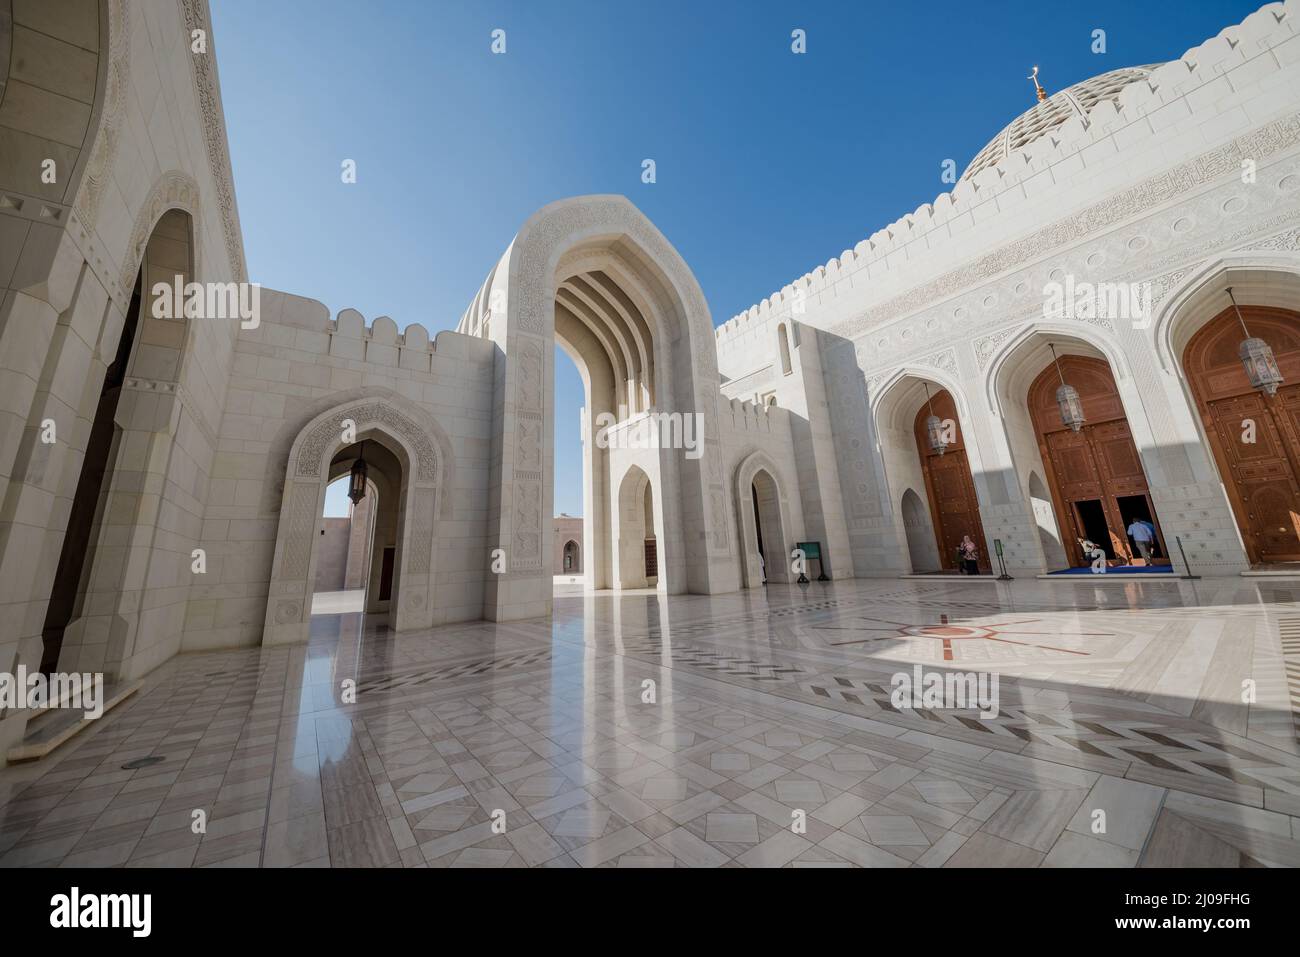 Eine schöne und elegante Architektur einer Großen Moschee, Oman. Islamische religiöse Wahrzeichen und Gebäude. Stockfoto